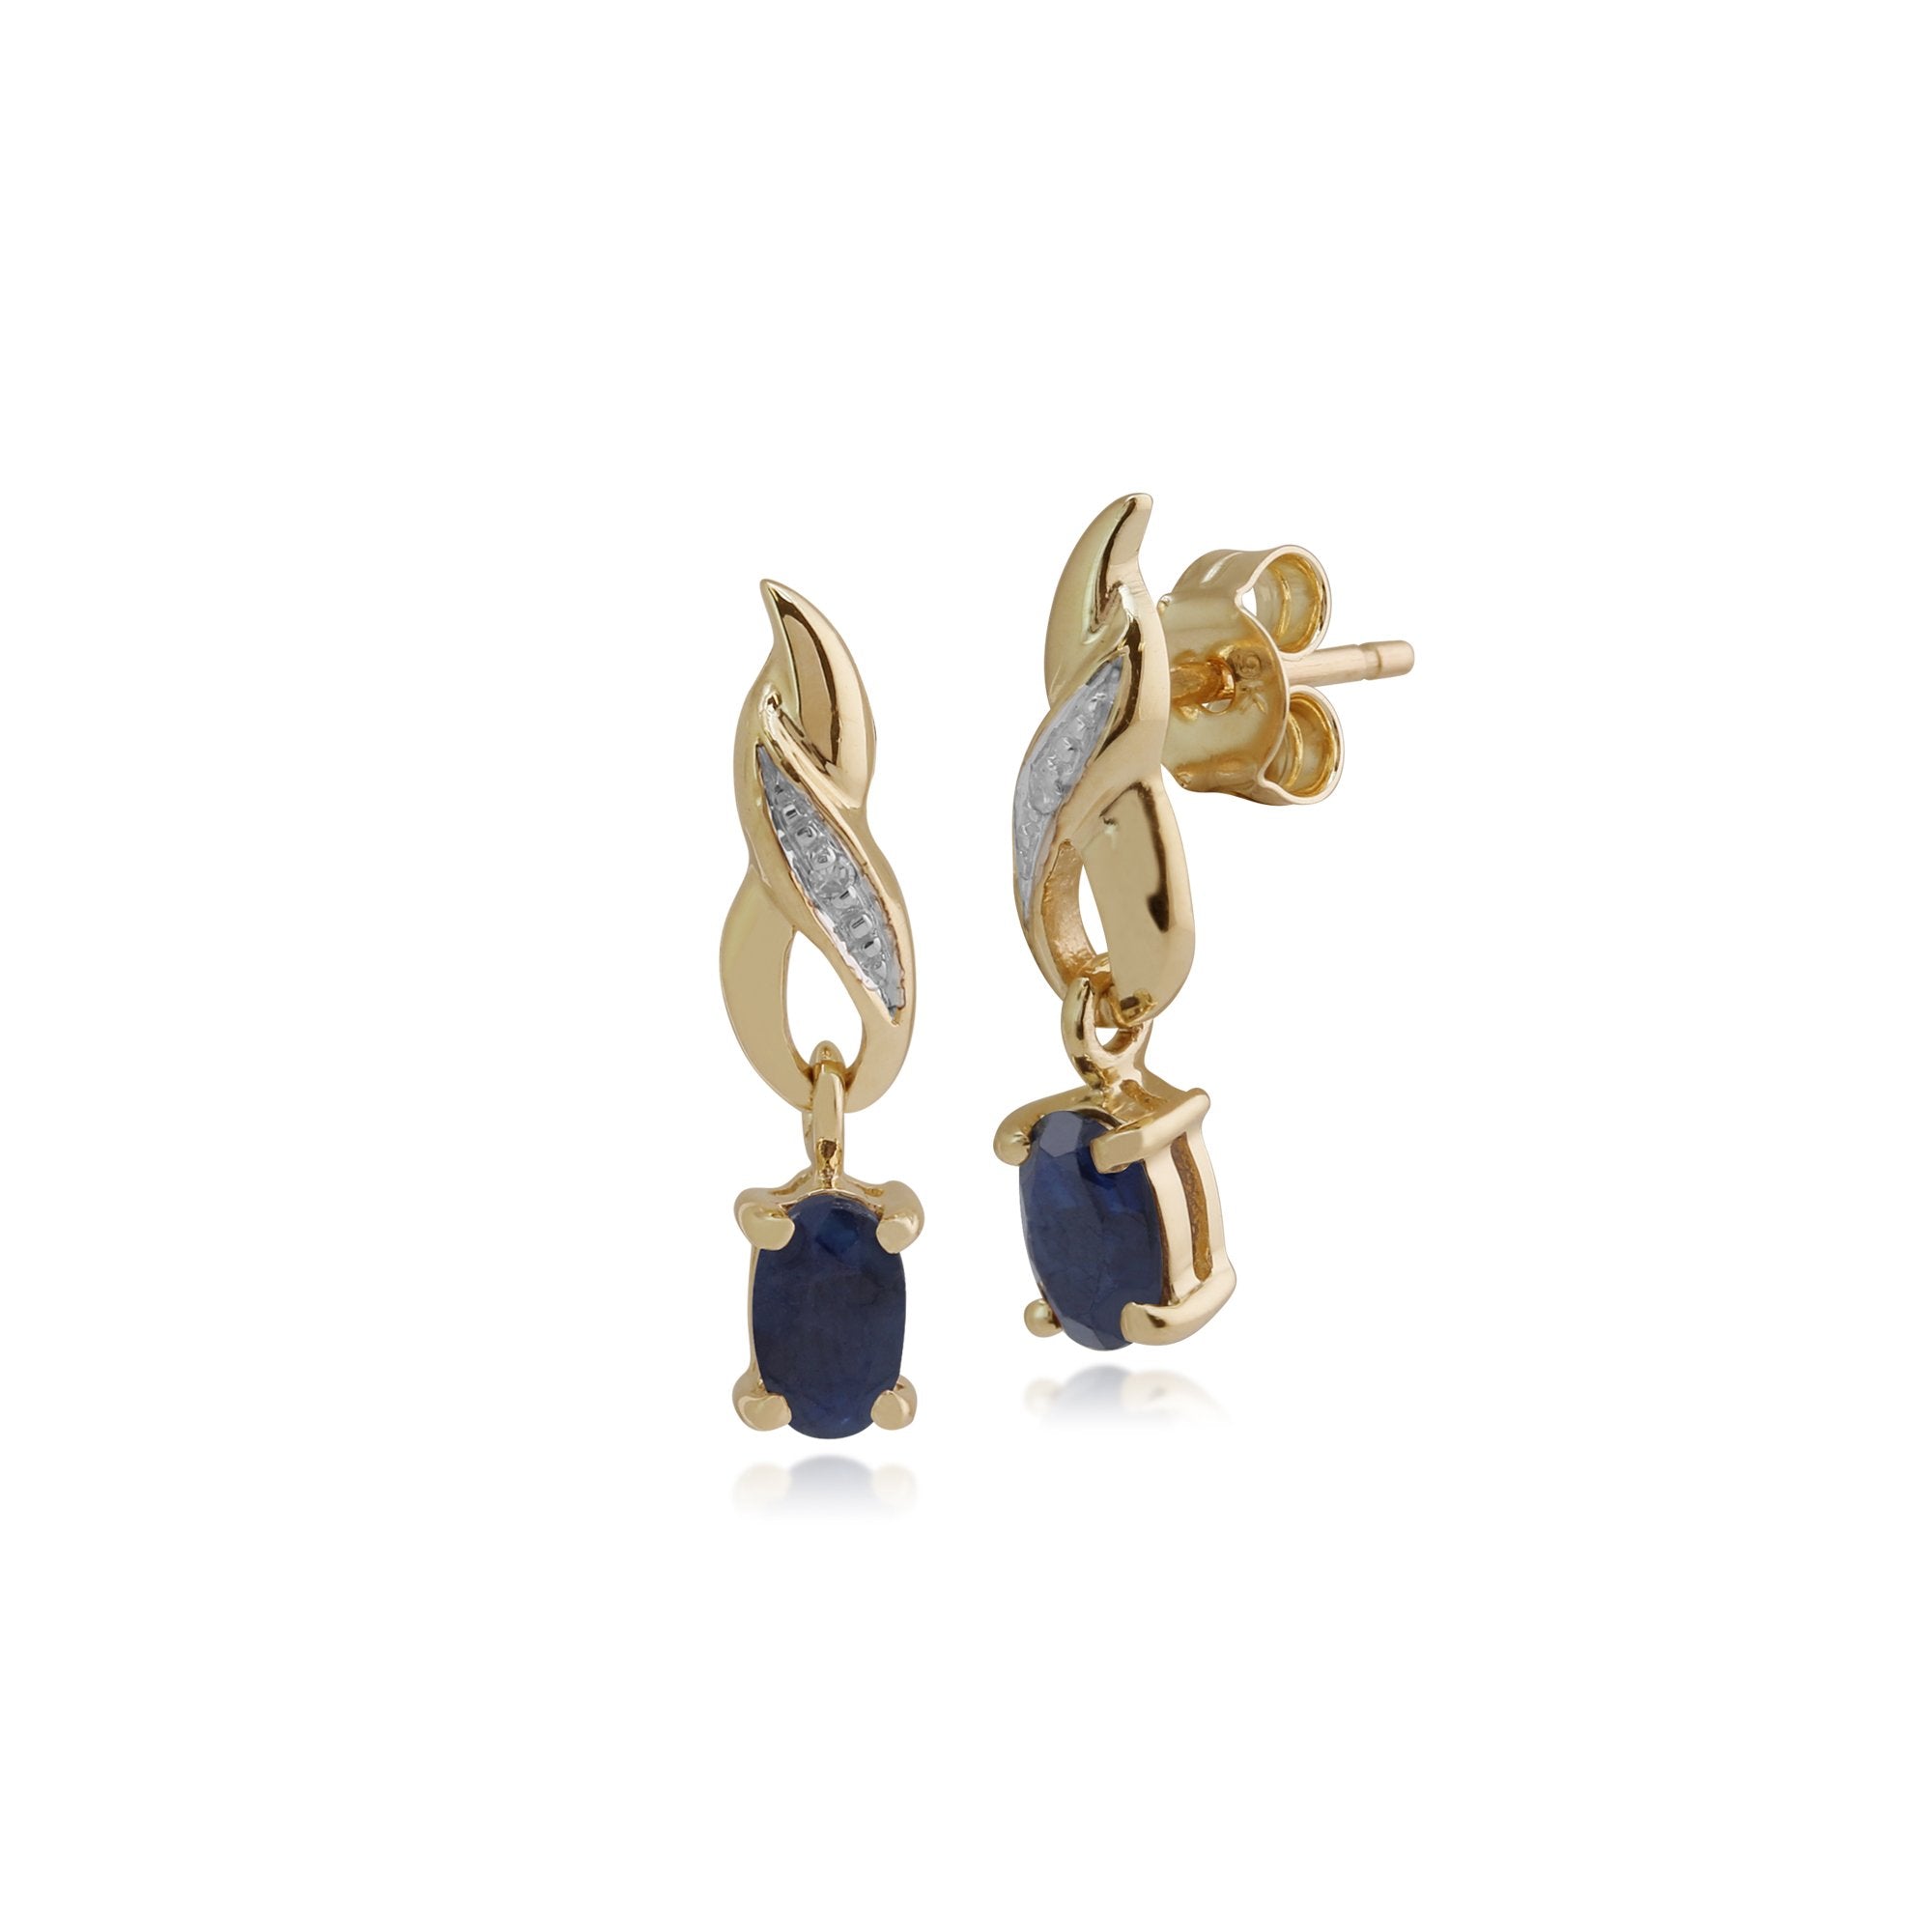 Art Nouveau Oval Sapphire & Diamond Drop Earrings in 9ct Yellow Gold